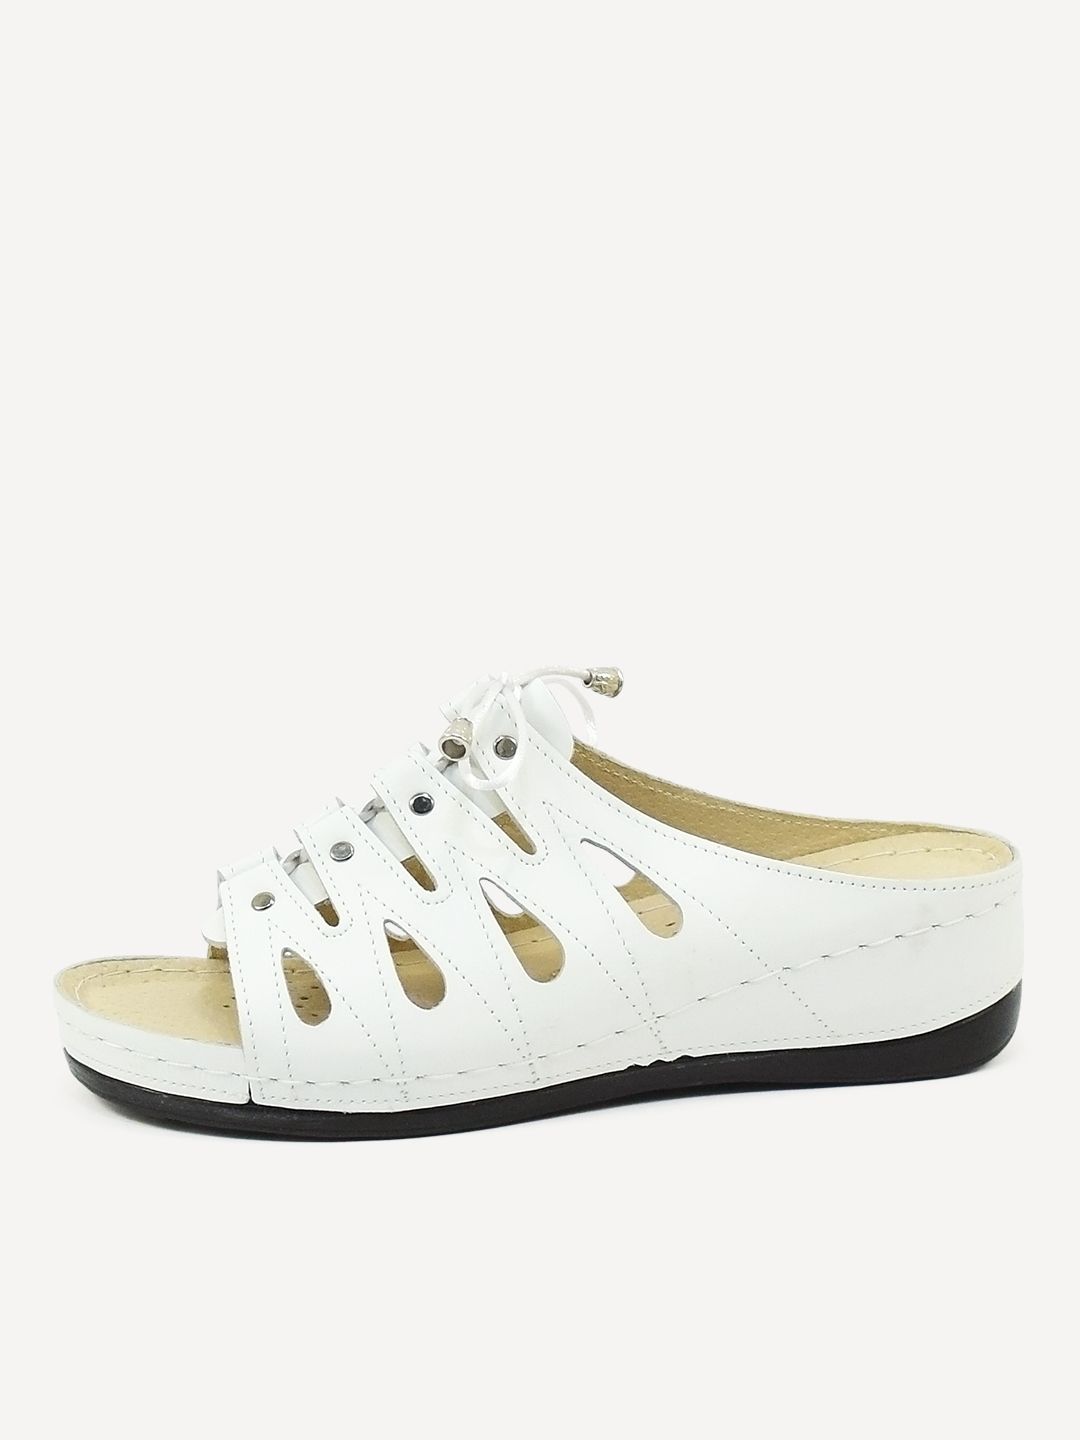 Сабо женские Melitta Shoes 008 белые 38 RU